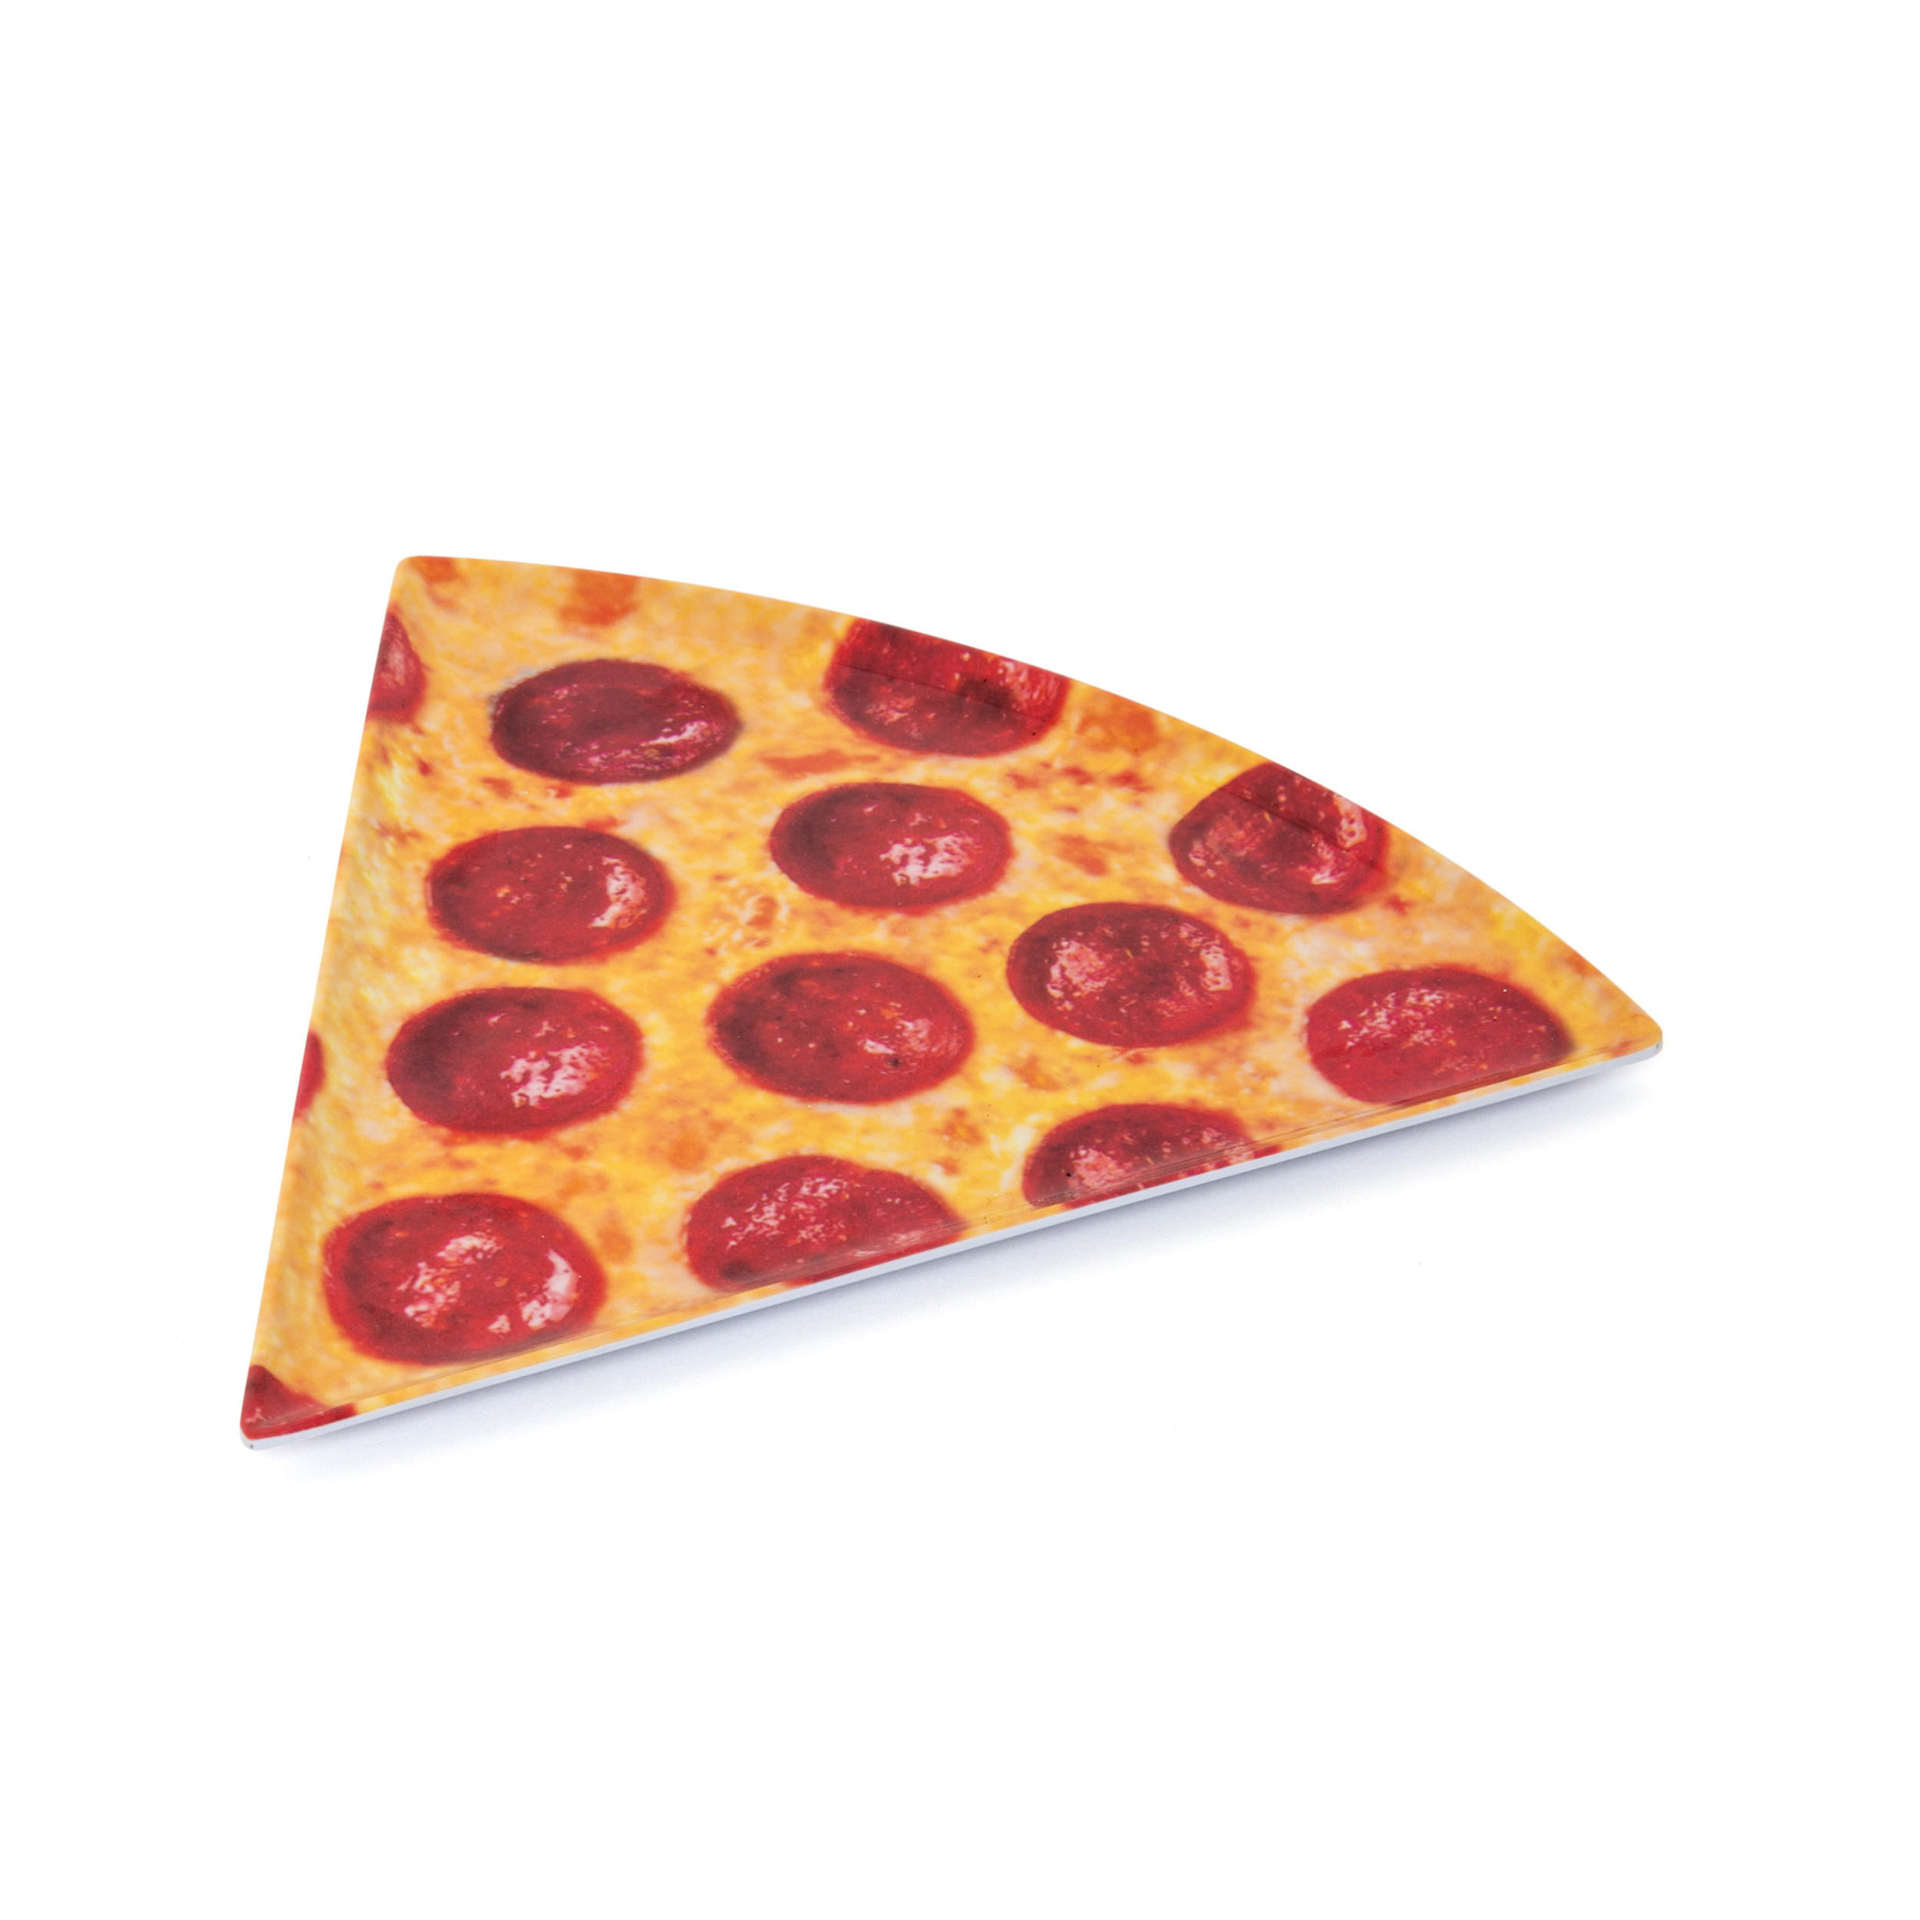 Piatto a forma di trancio di pizza, , large